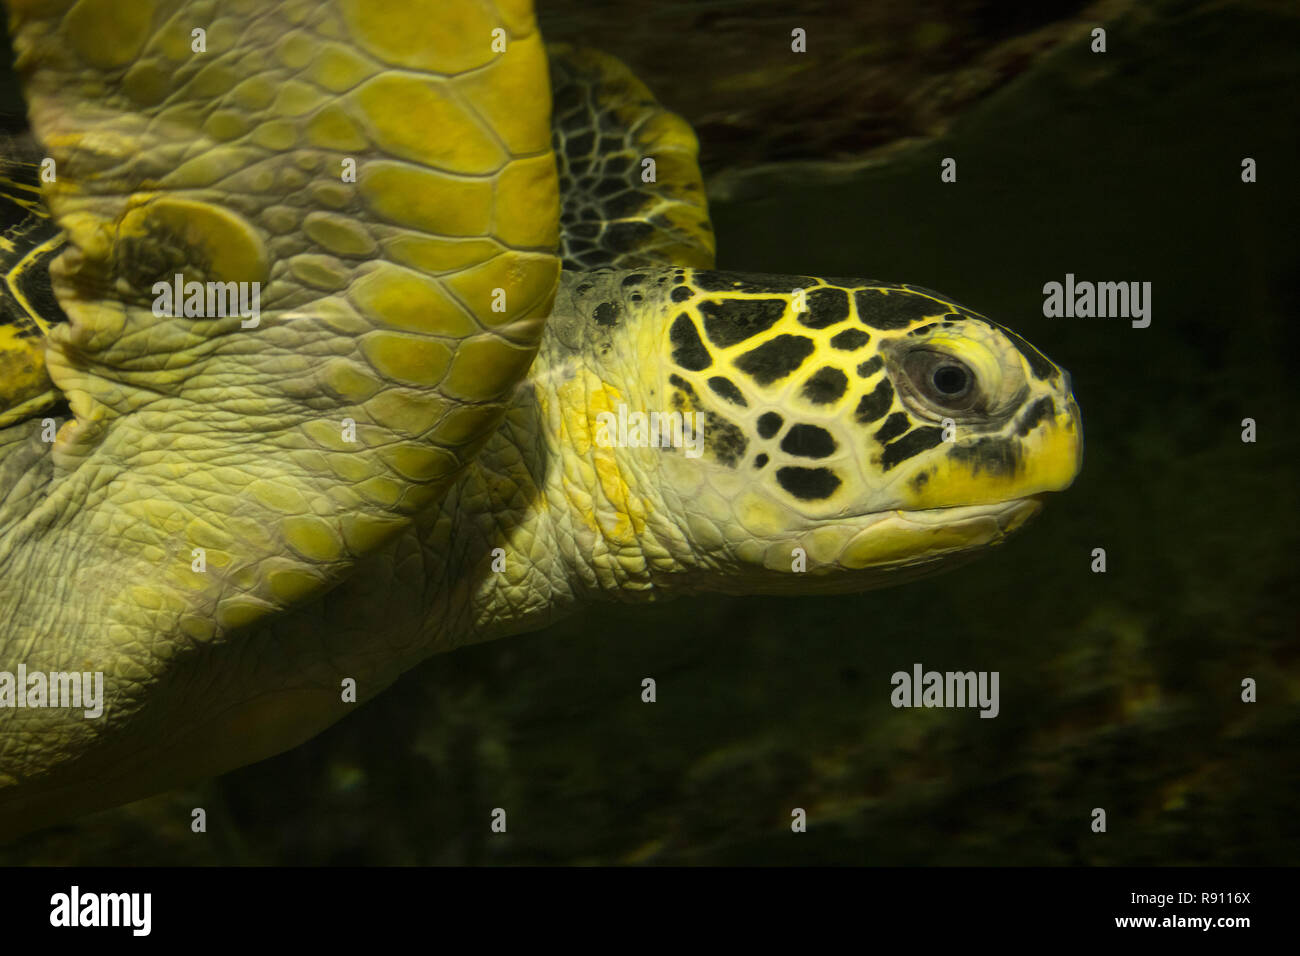 Gros plan de la tête d'une tortue verte underwater Banque D'Images